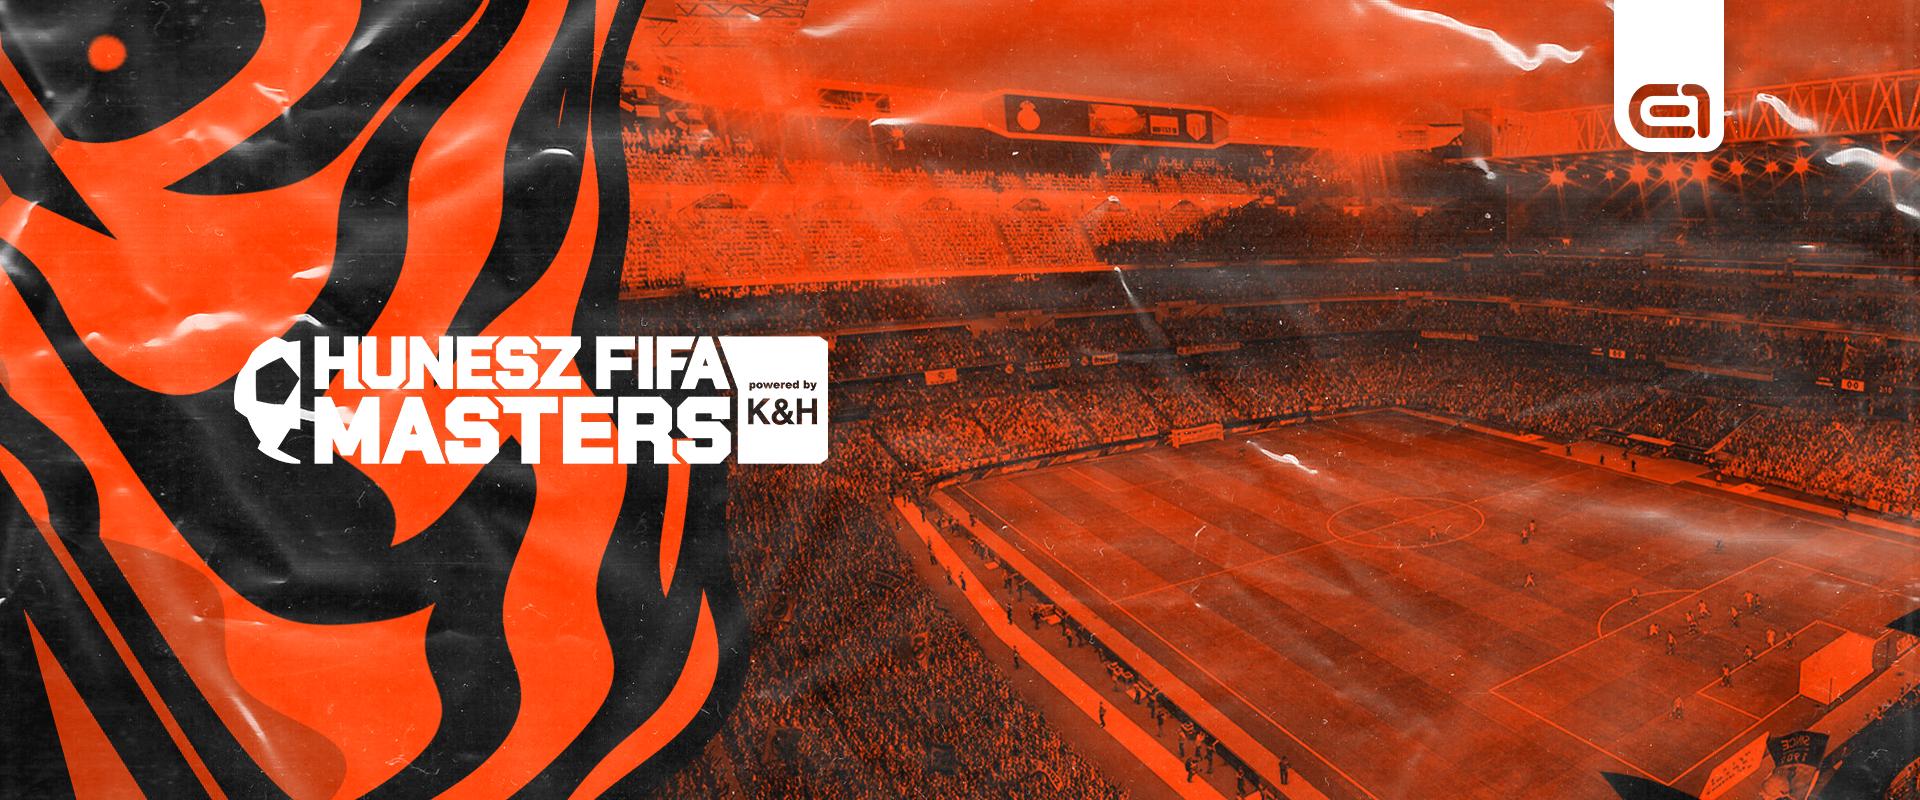 K&H MNEB: Megújul az ország legnagyobb FIFA-versenye, a HUNESZ FIFA Masters